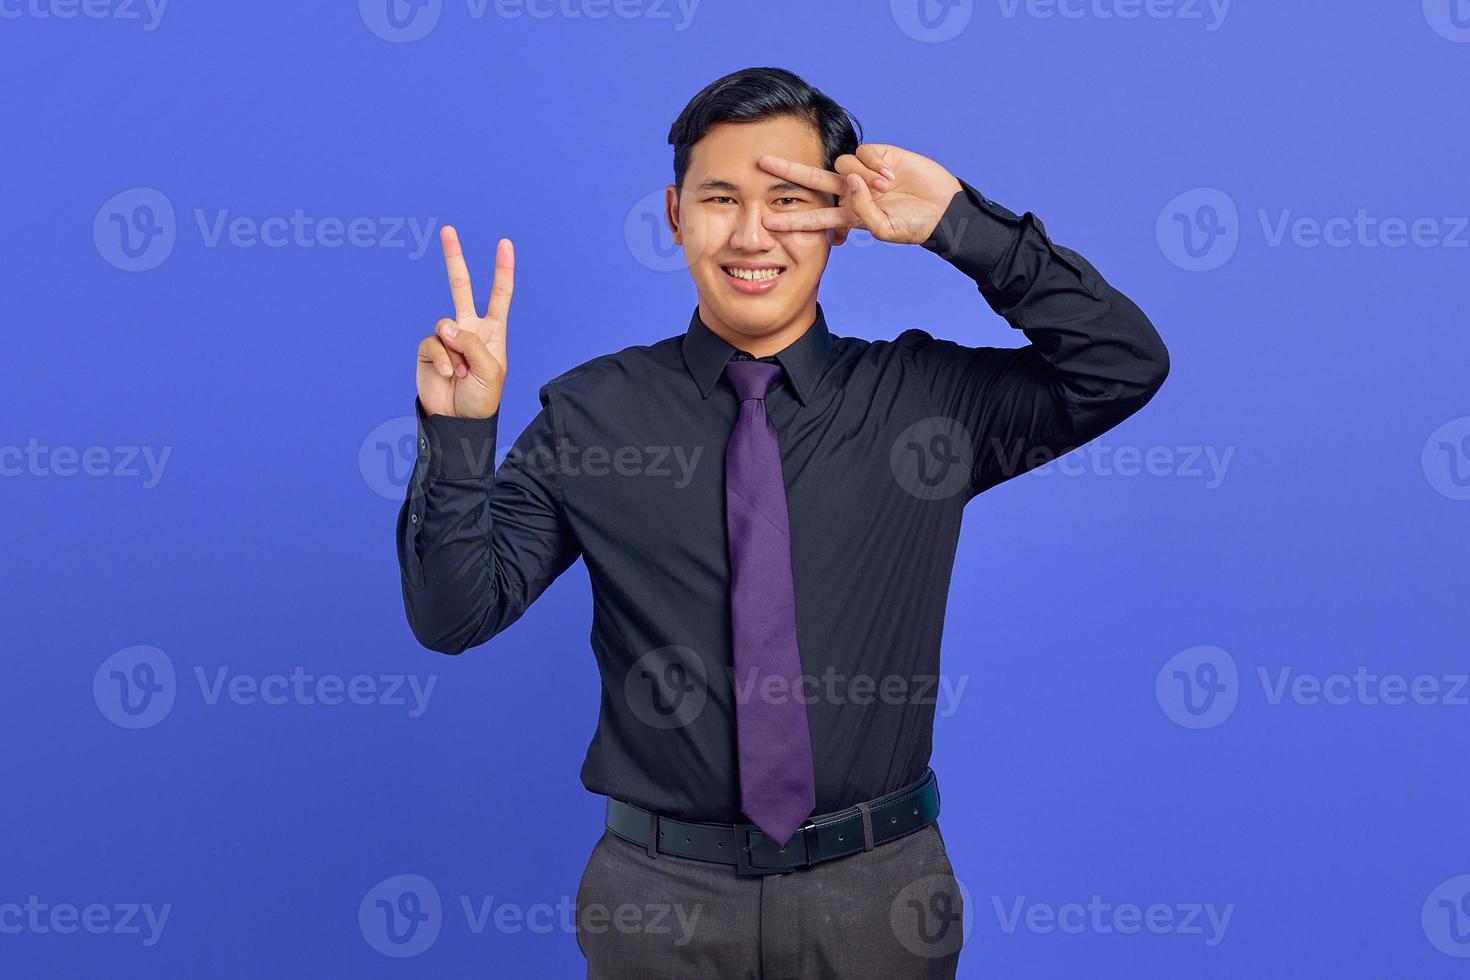 foto van een glimlachende knappe zakenman die een vredesteken boven de ogen op een paarse achtergrond toont